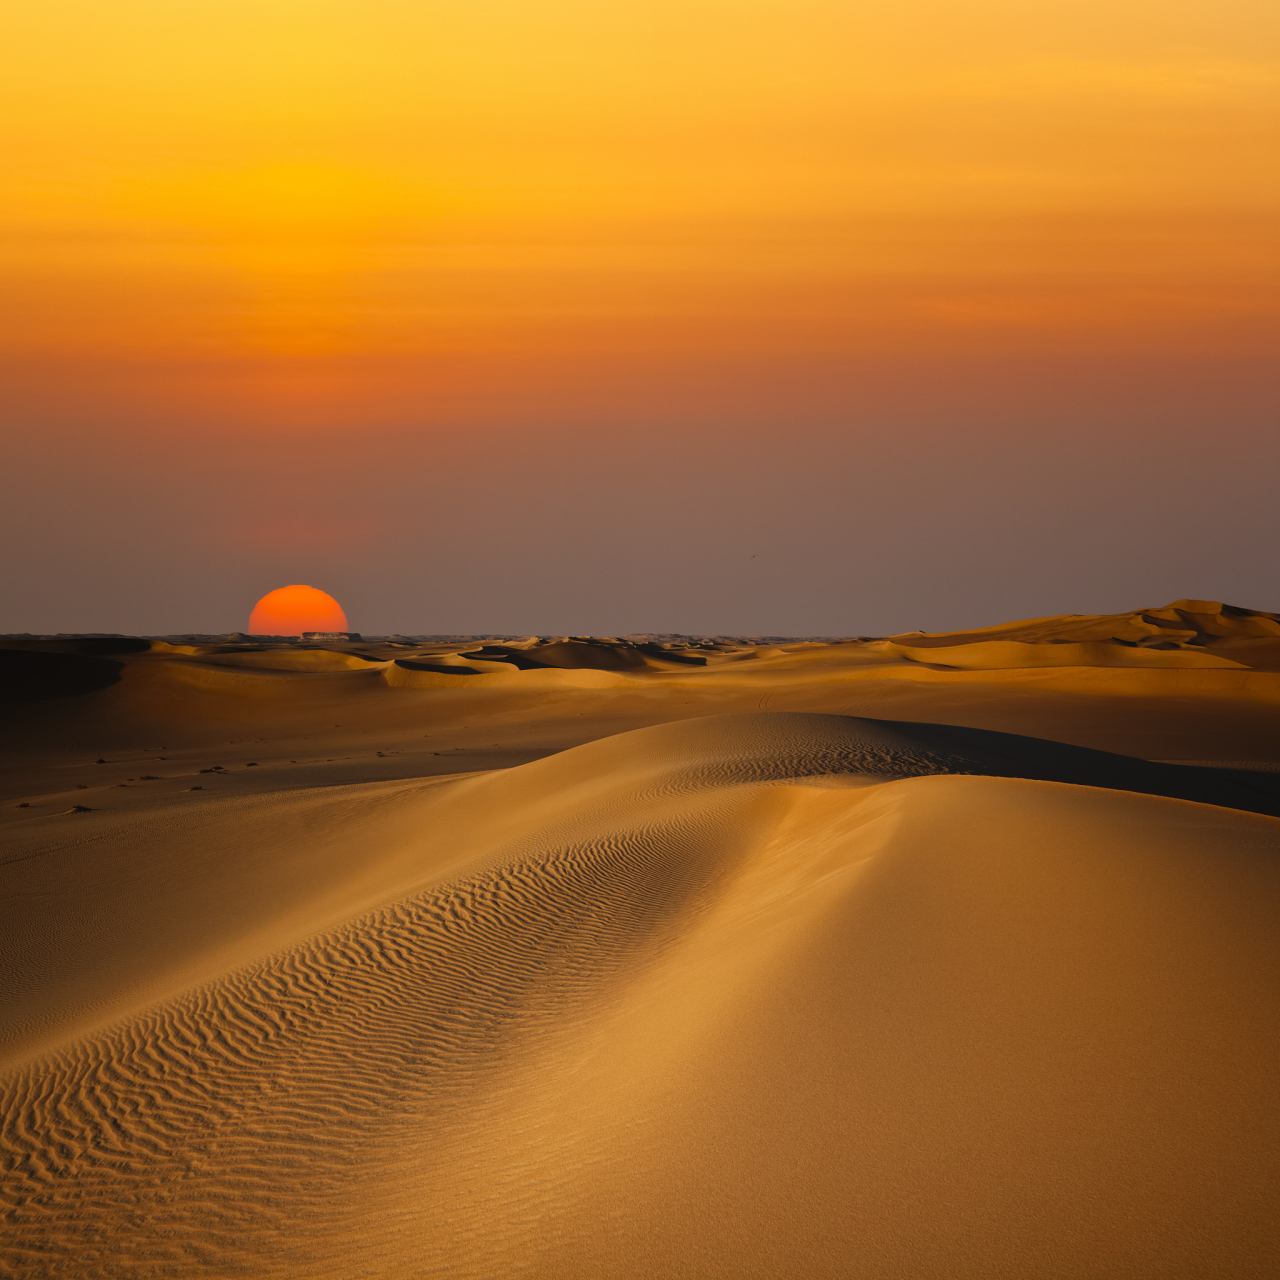 11566 沙漠夕阳,这是一个让人心醉神迷的景象